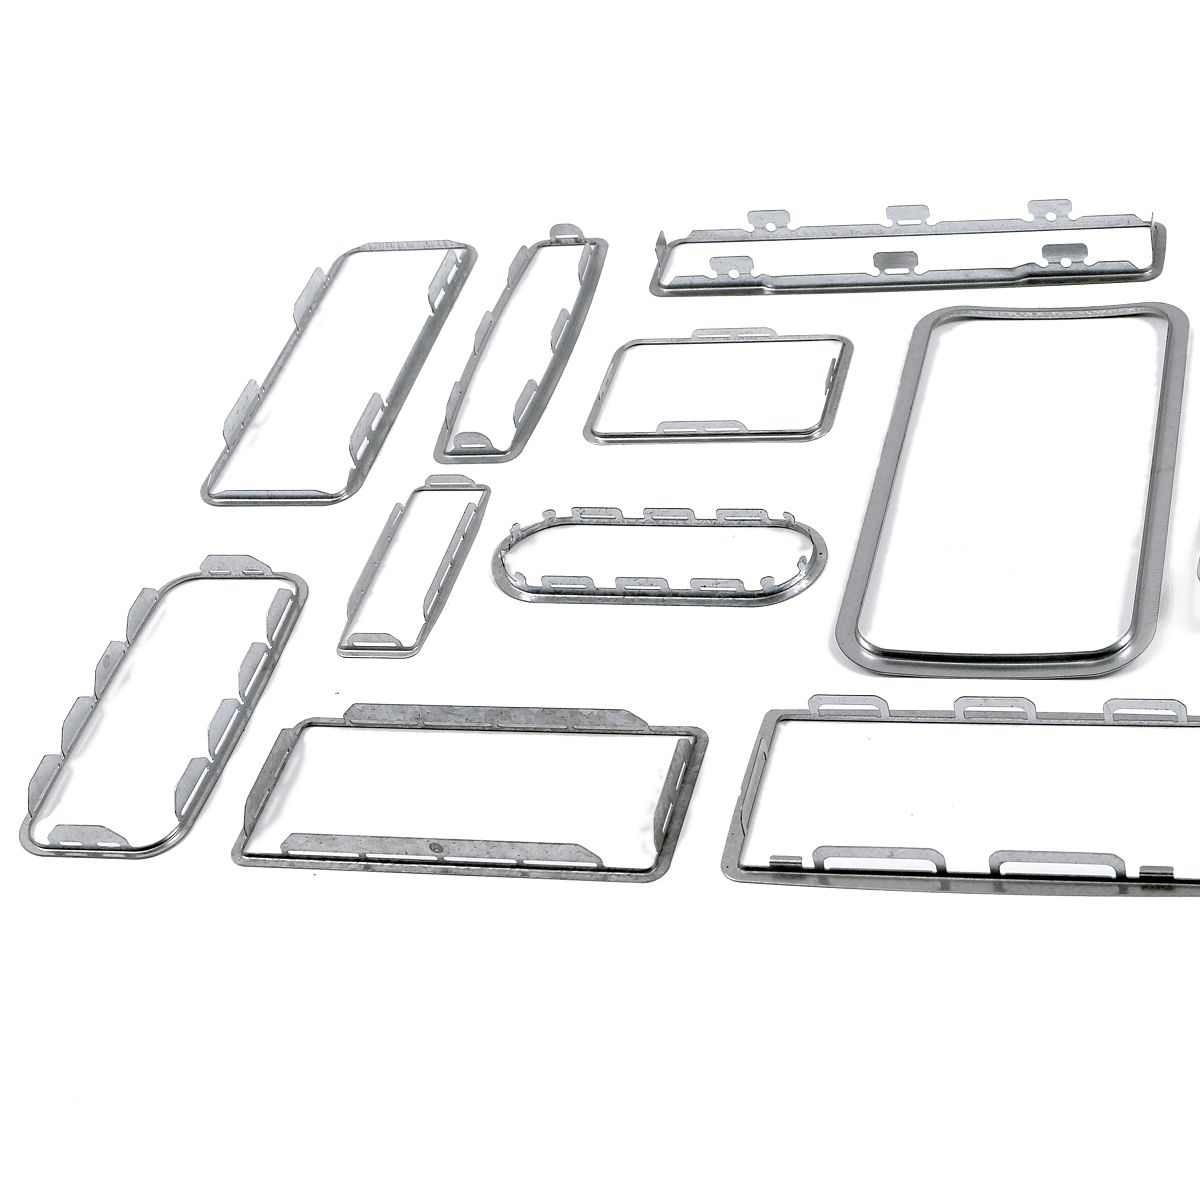 marcos - Acero inoxidable o acero con recubrimiento anti-corrosión